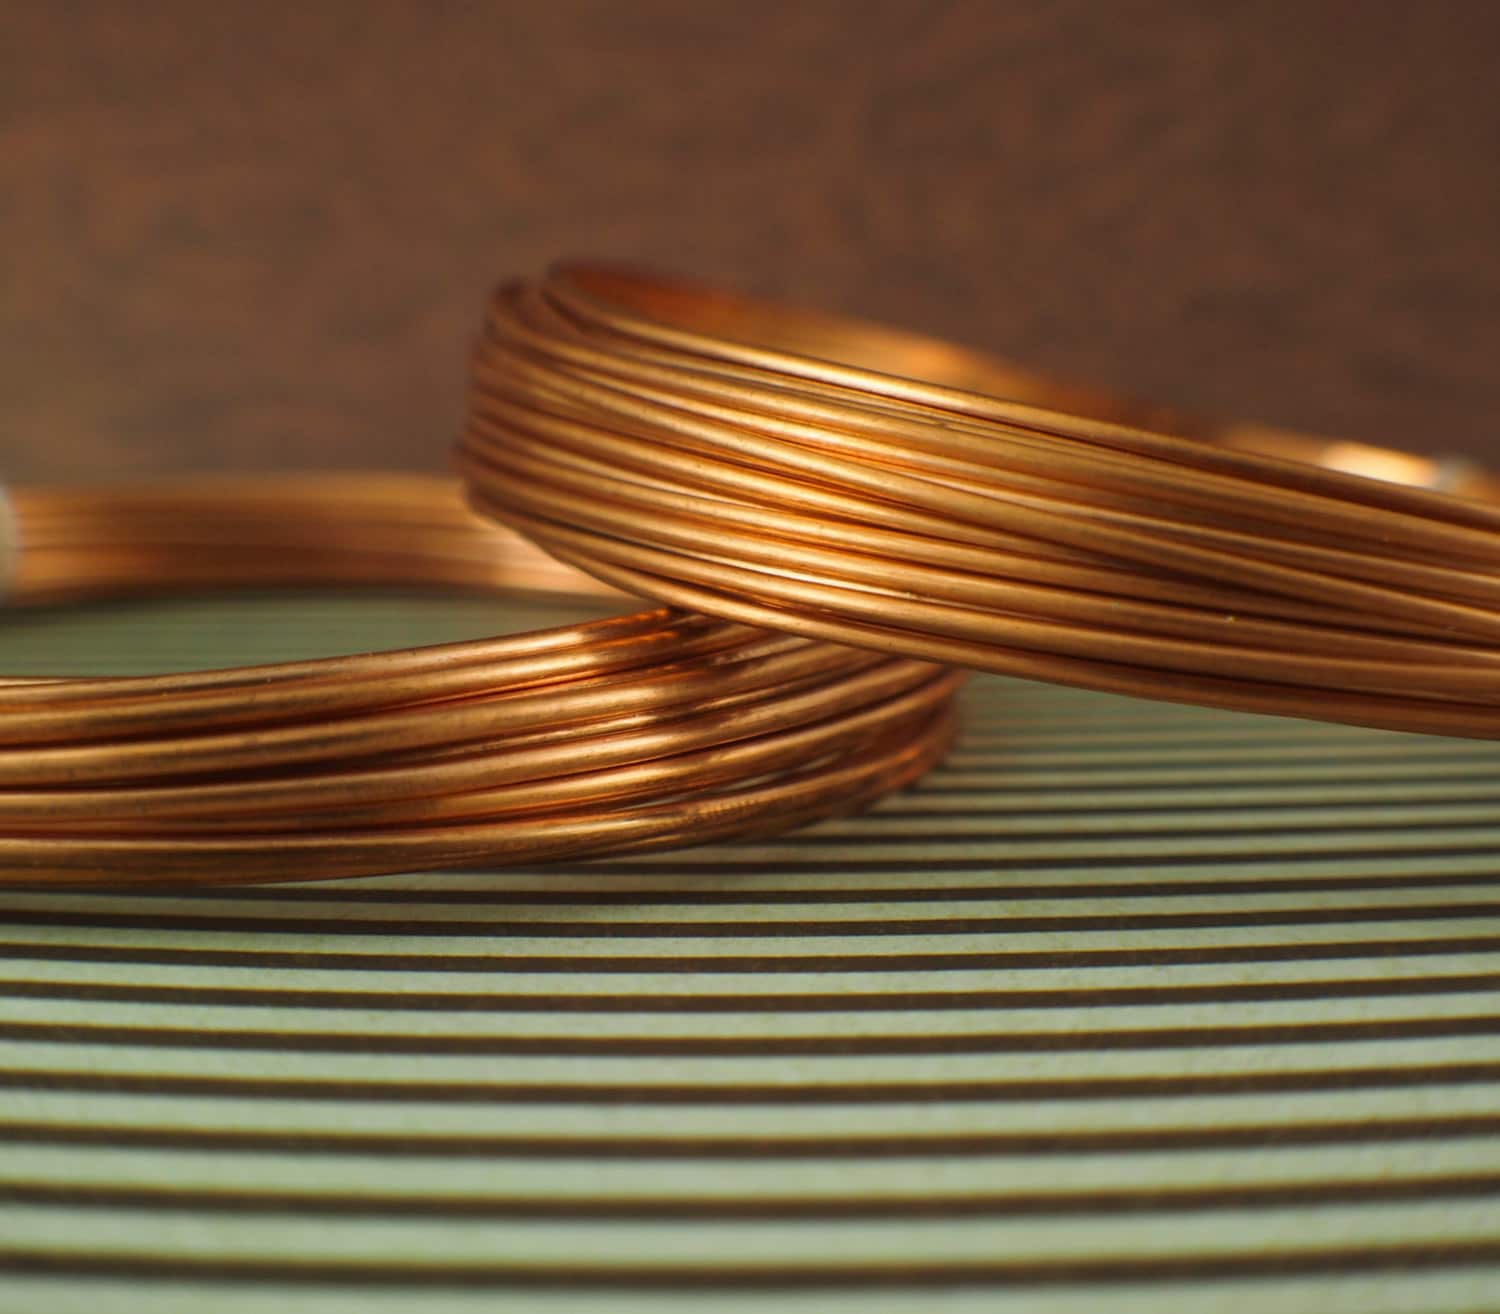 24 Gauge Round Half Hard Copper Wire: Wire Jewelry